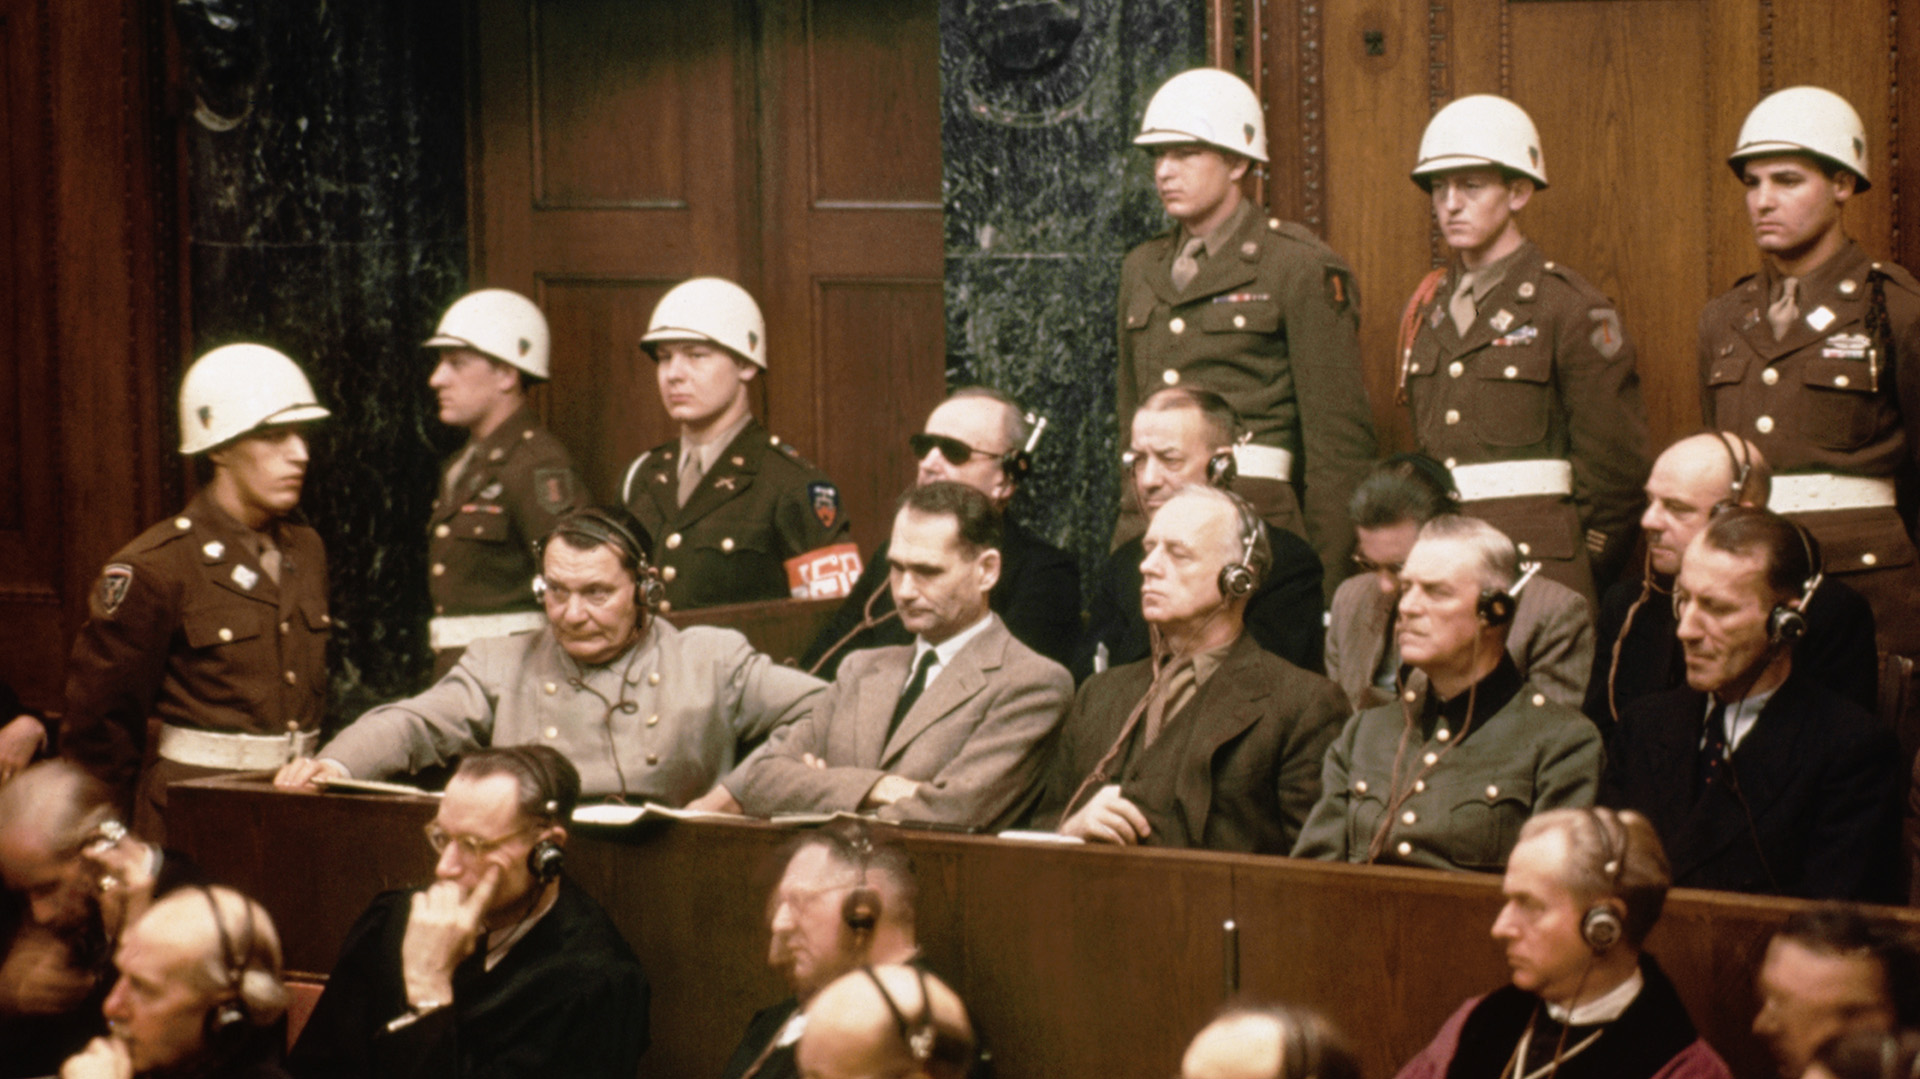 Loss acusados durantes las audiencias del Juicio de Núremberg: en la primera fila están Hermann Goering, Rudolf Hess, Joachim Von Ribbentrop, Wilhelm Keitel y Ernst Kaltenbrunner. En la fila de atrás, Karl Doenitz, Erich Raeder, Baldur von Schirach y Fritz Sauckel.